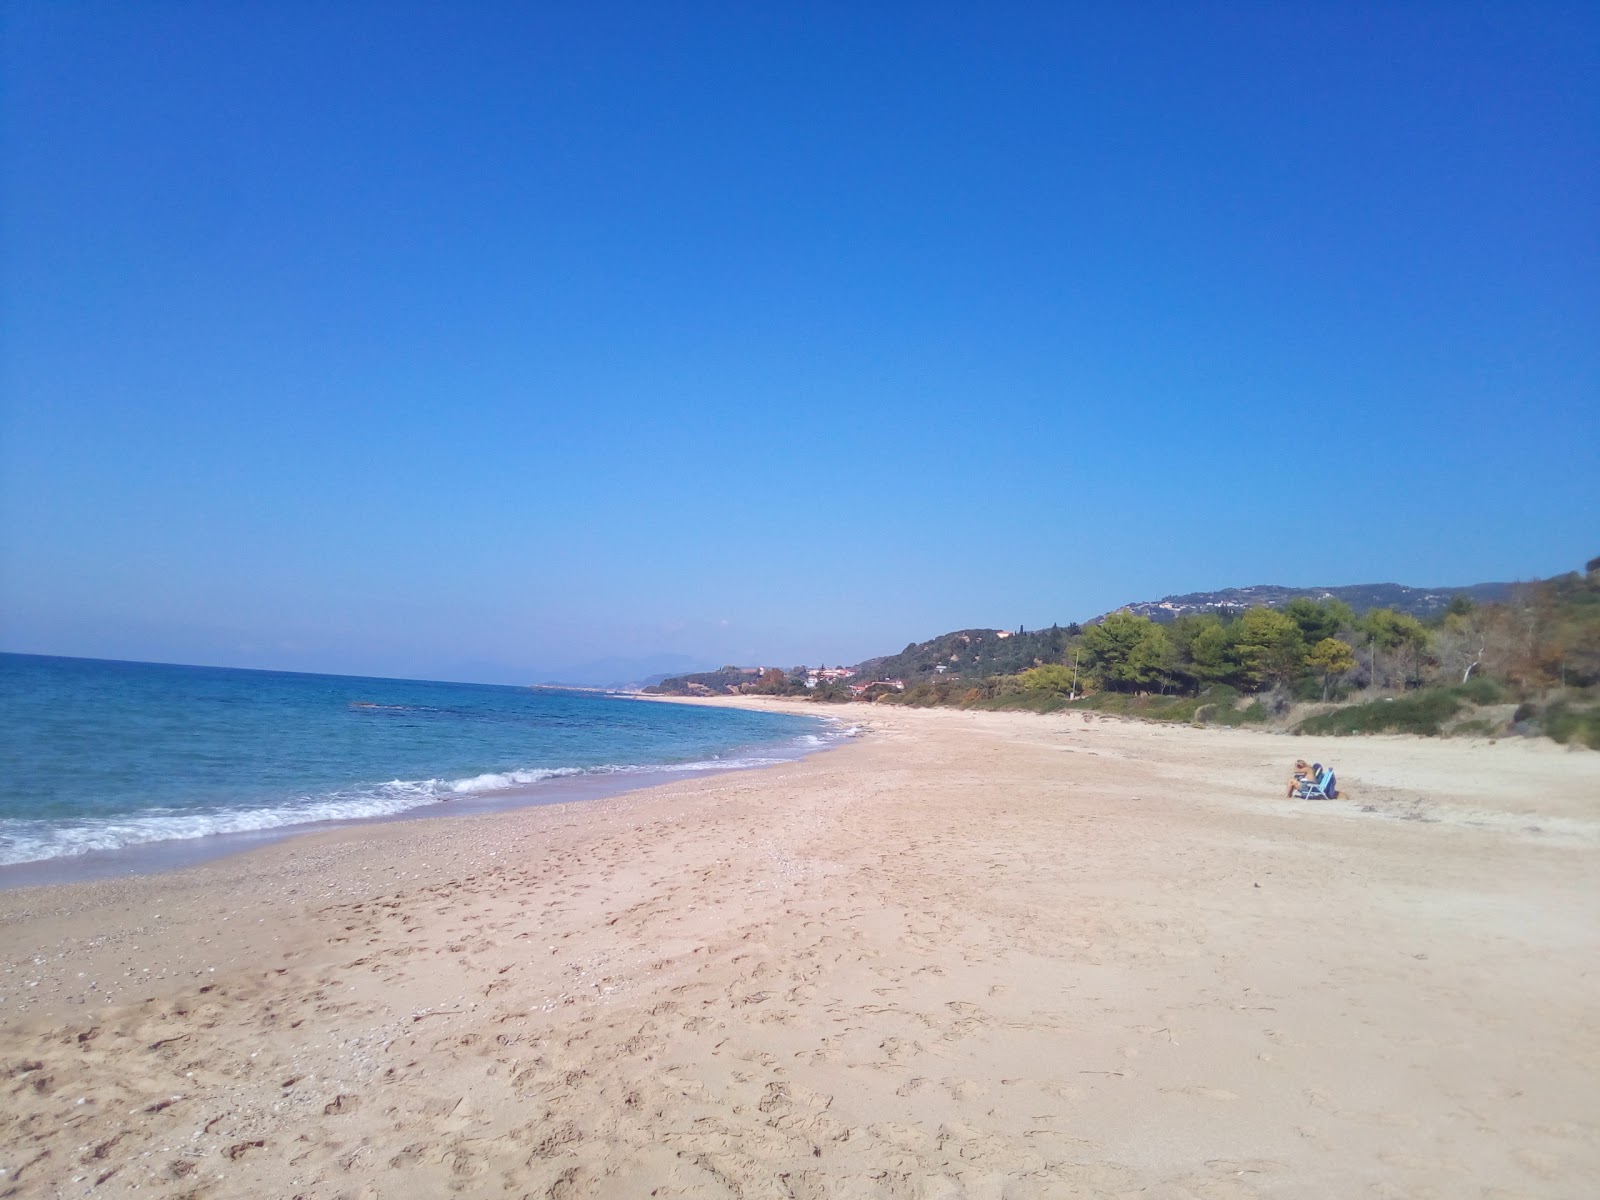 Fotografie cu Lygia beach cu o suprafață de nisip strălucitor